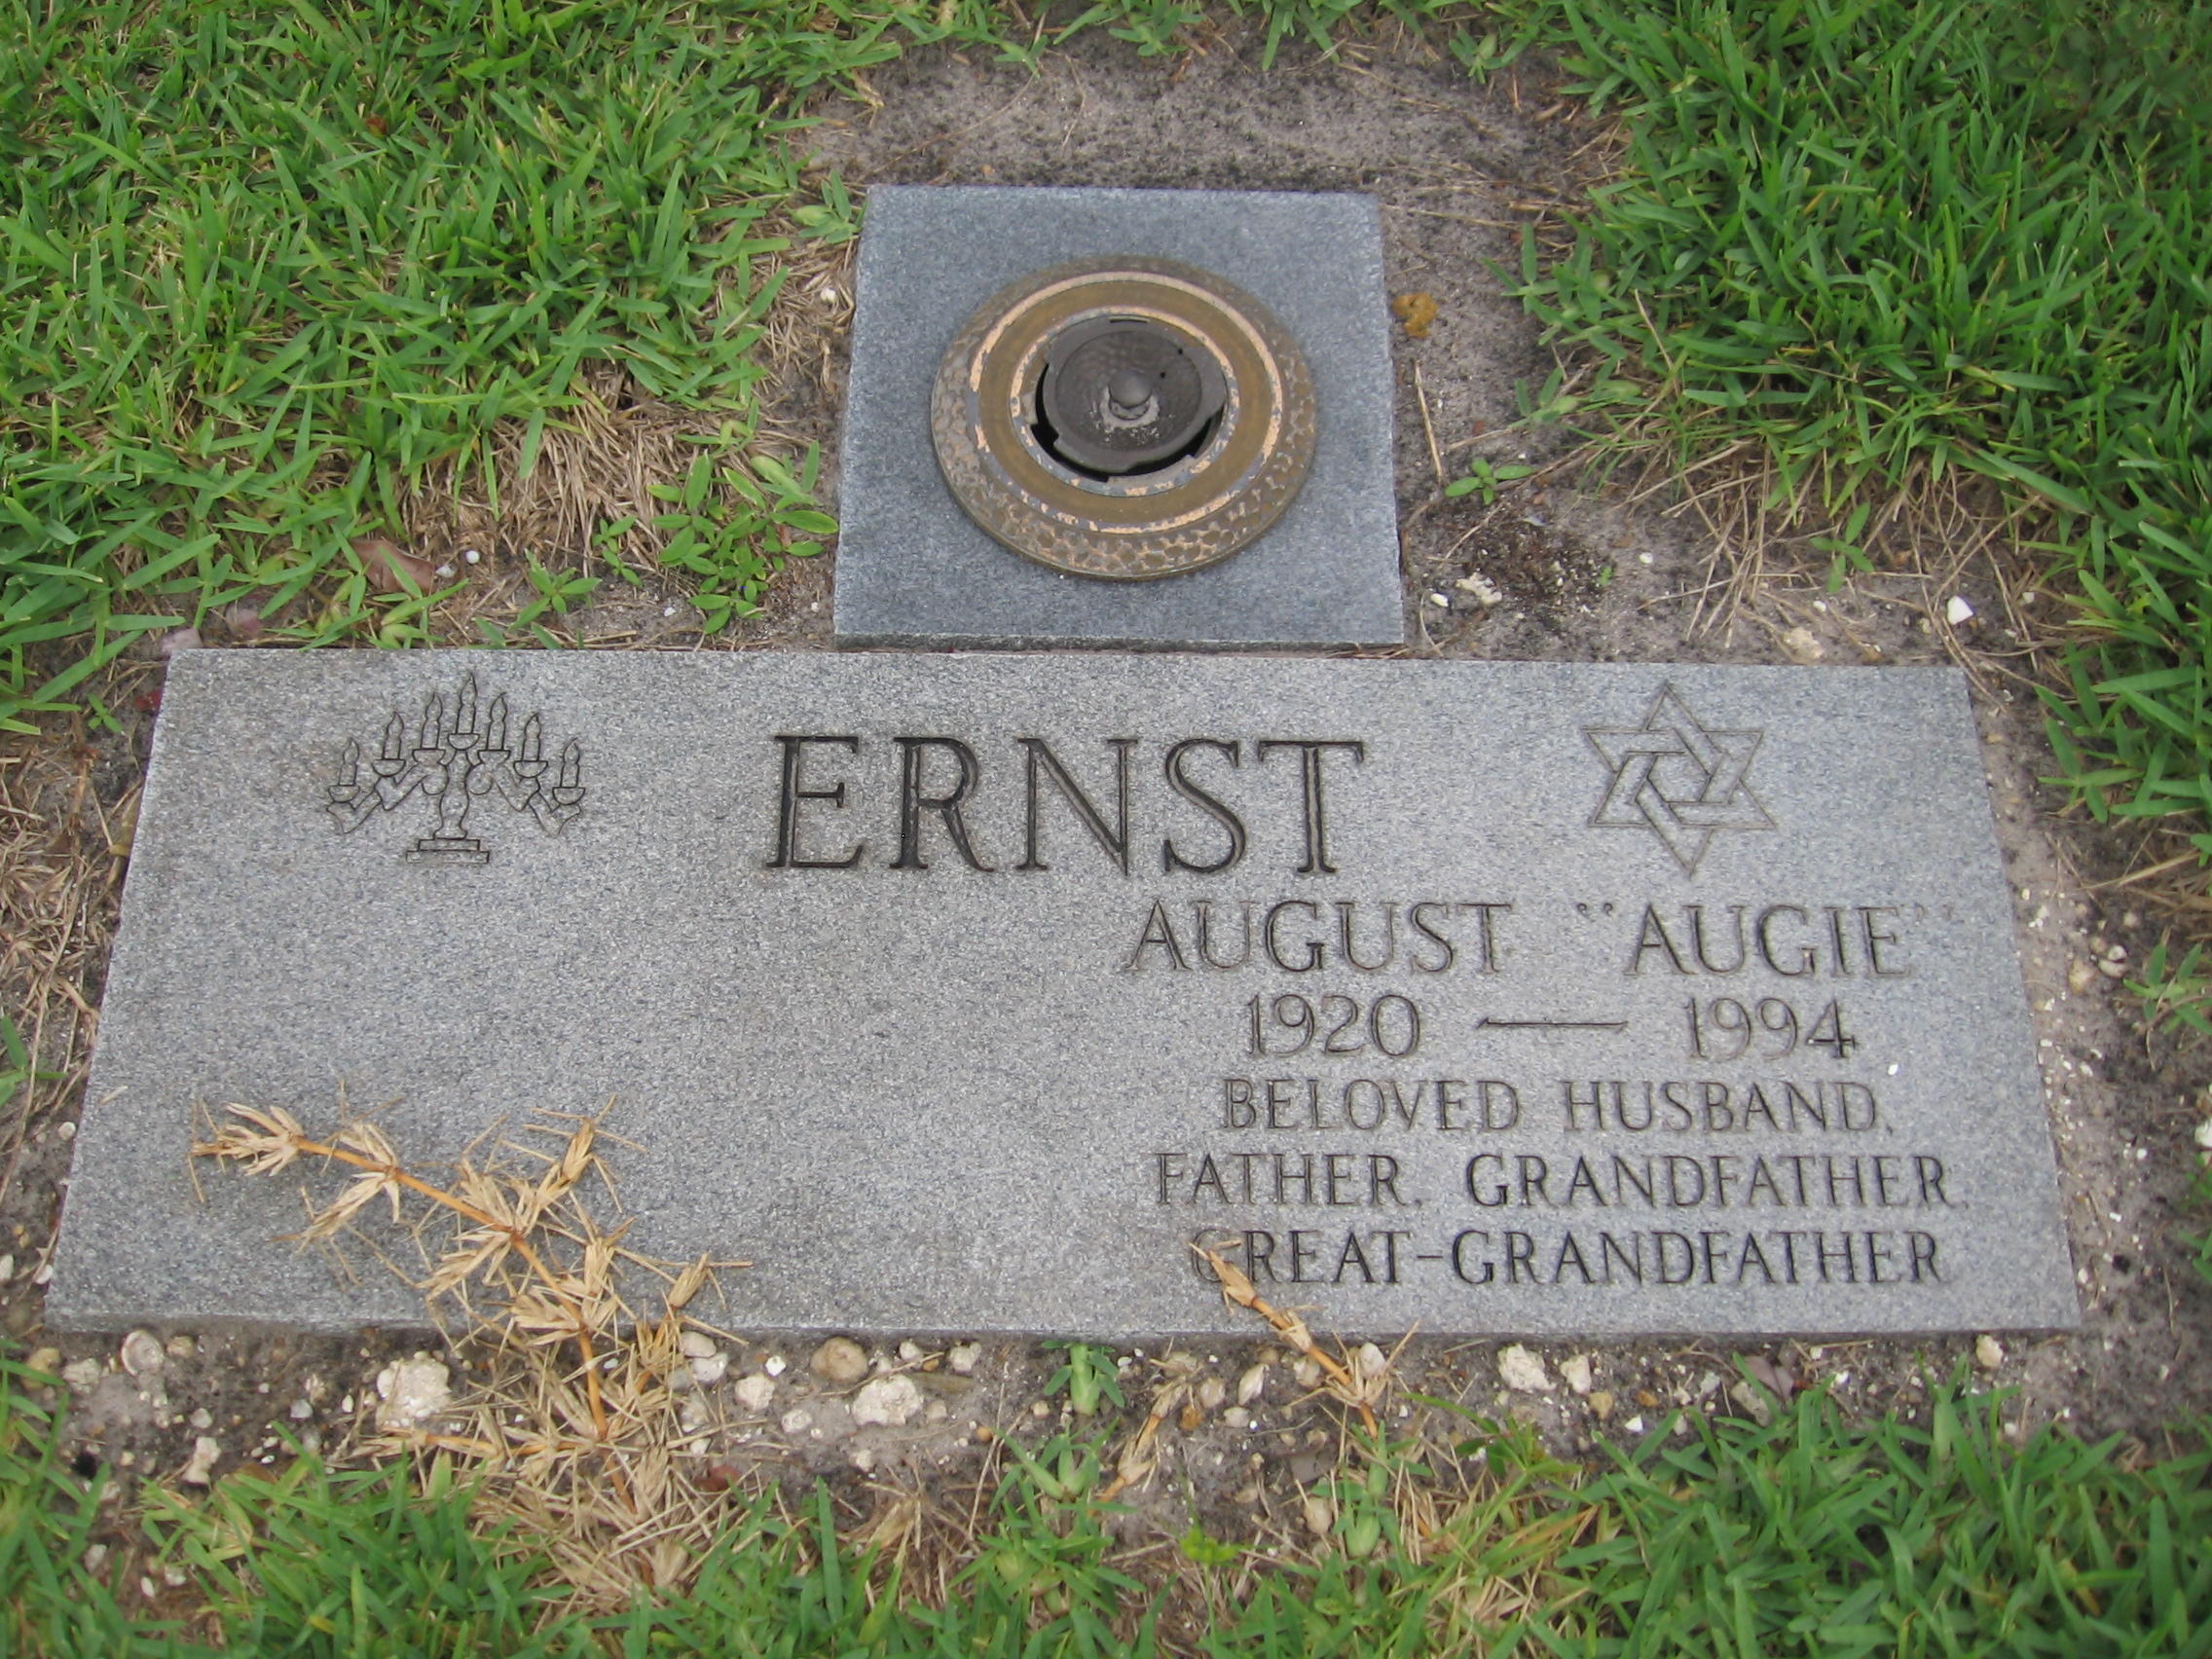 August "Augie" Ernst